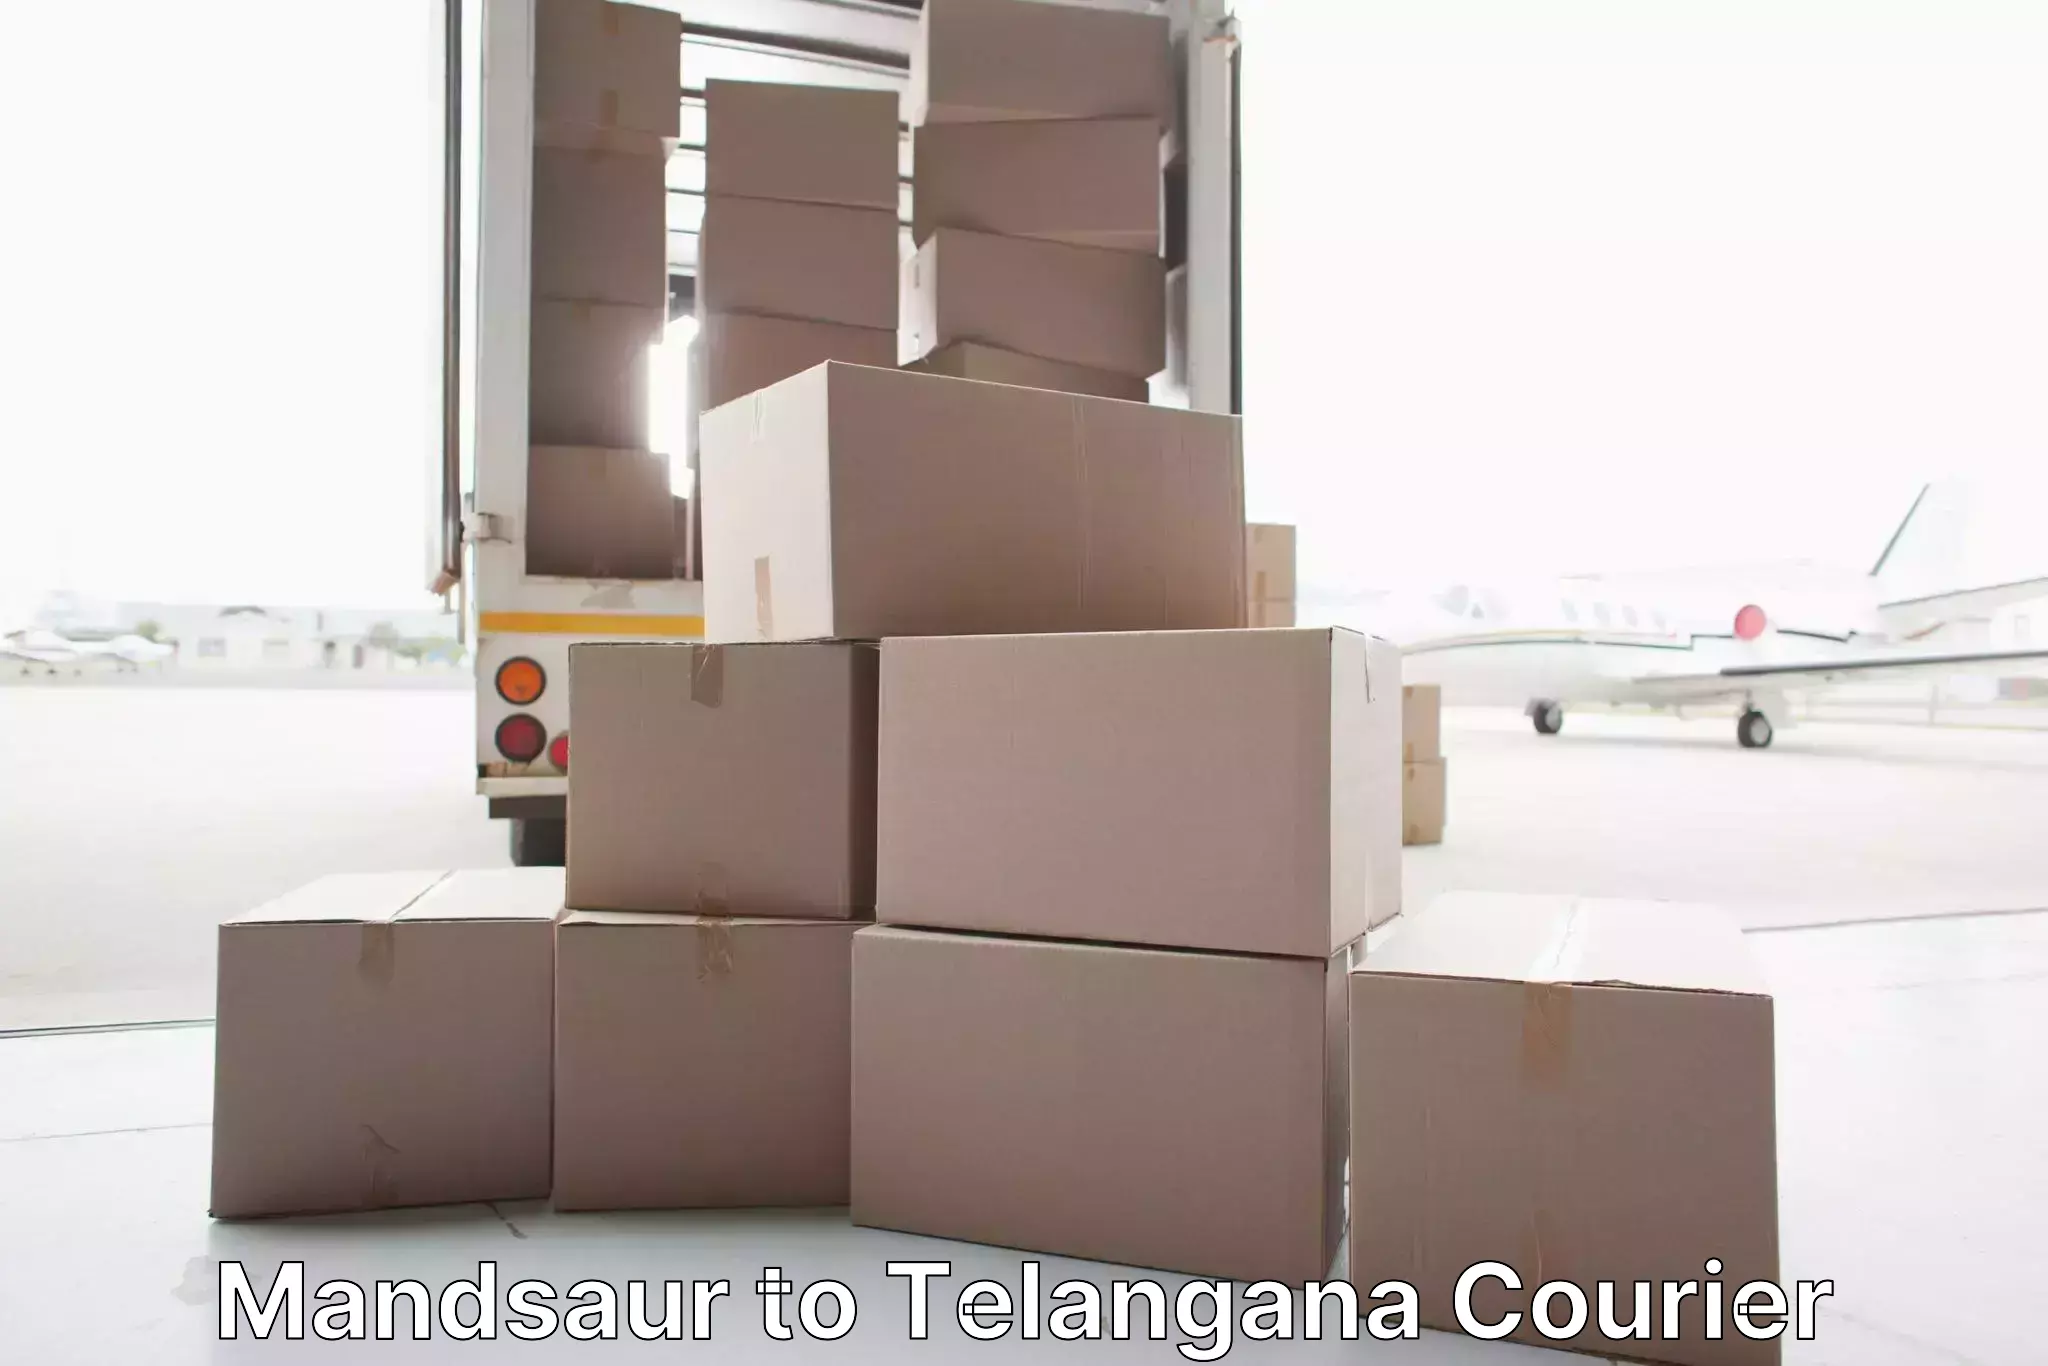 Full-service relocation in Mandsaur to Telangana